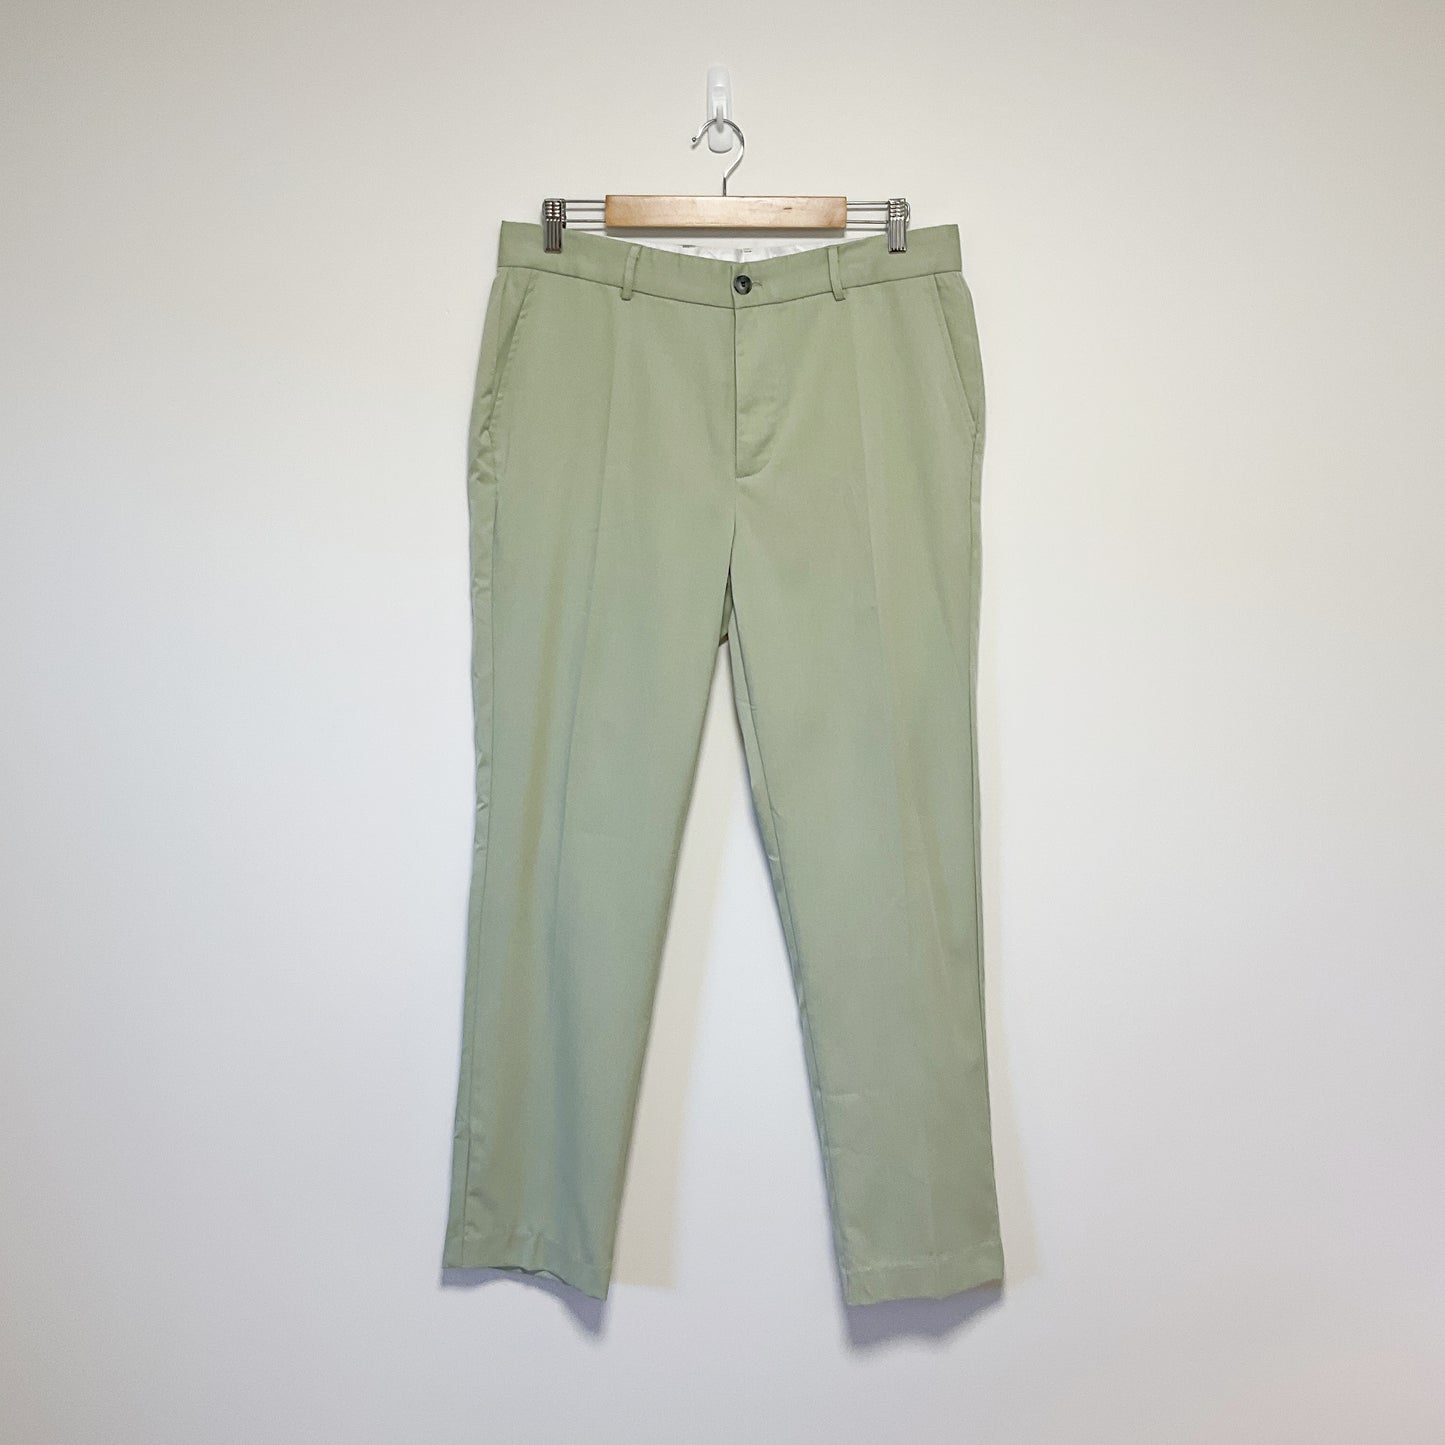 Shein - Pastel Green Pants